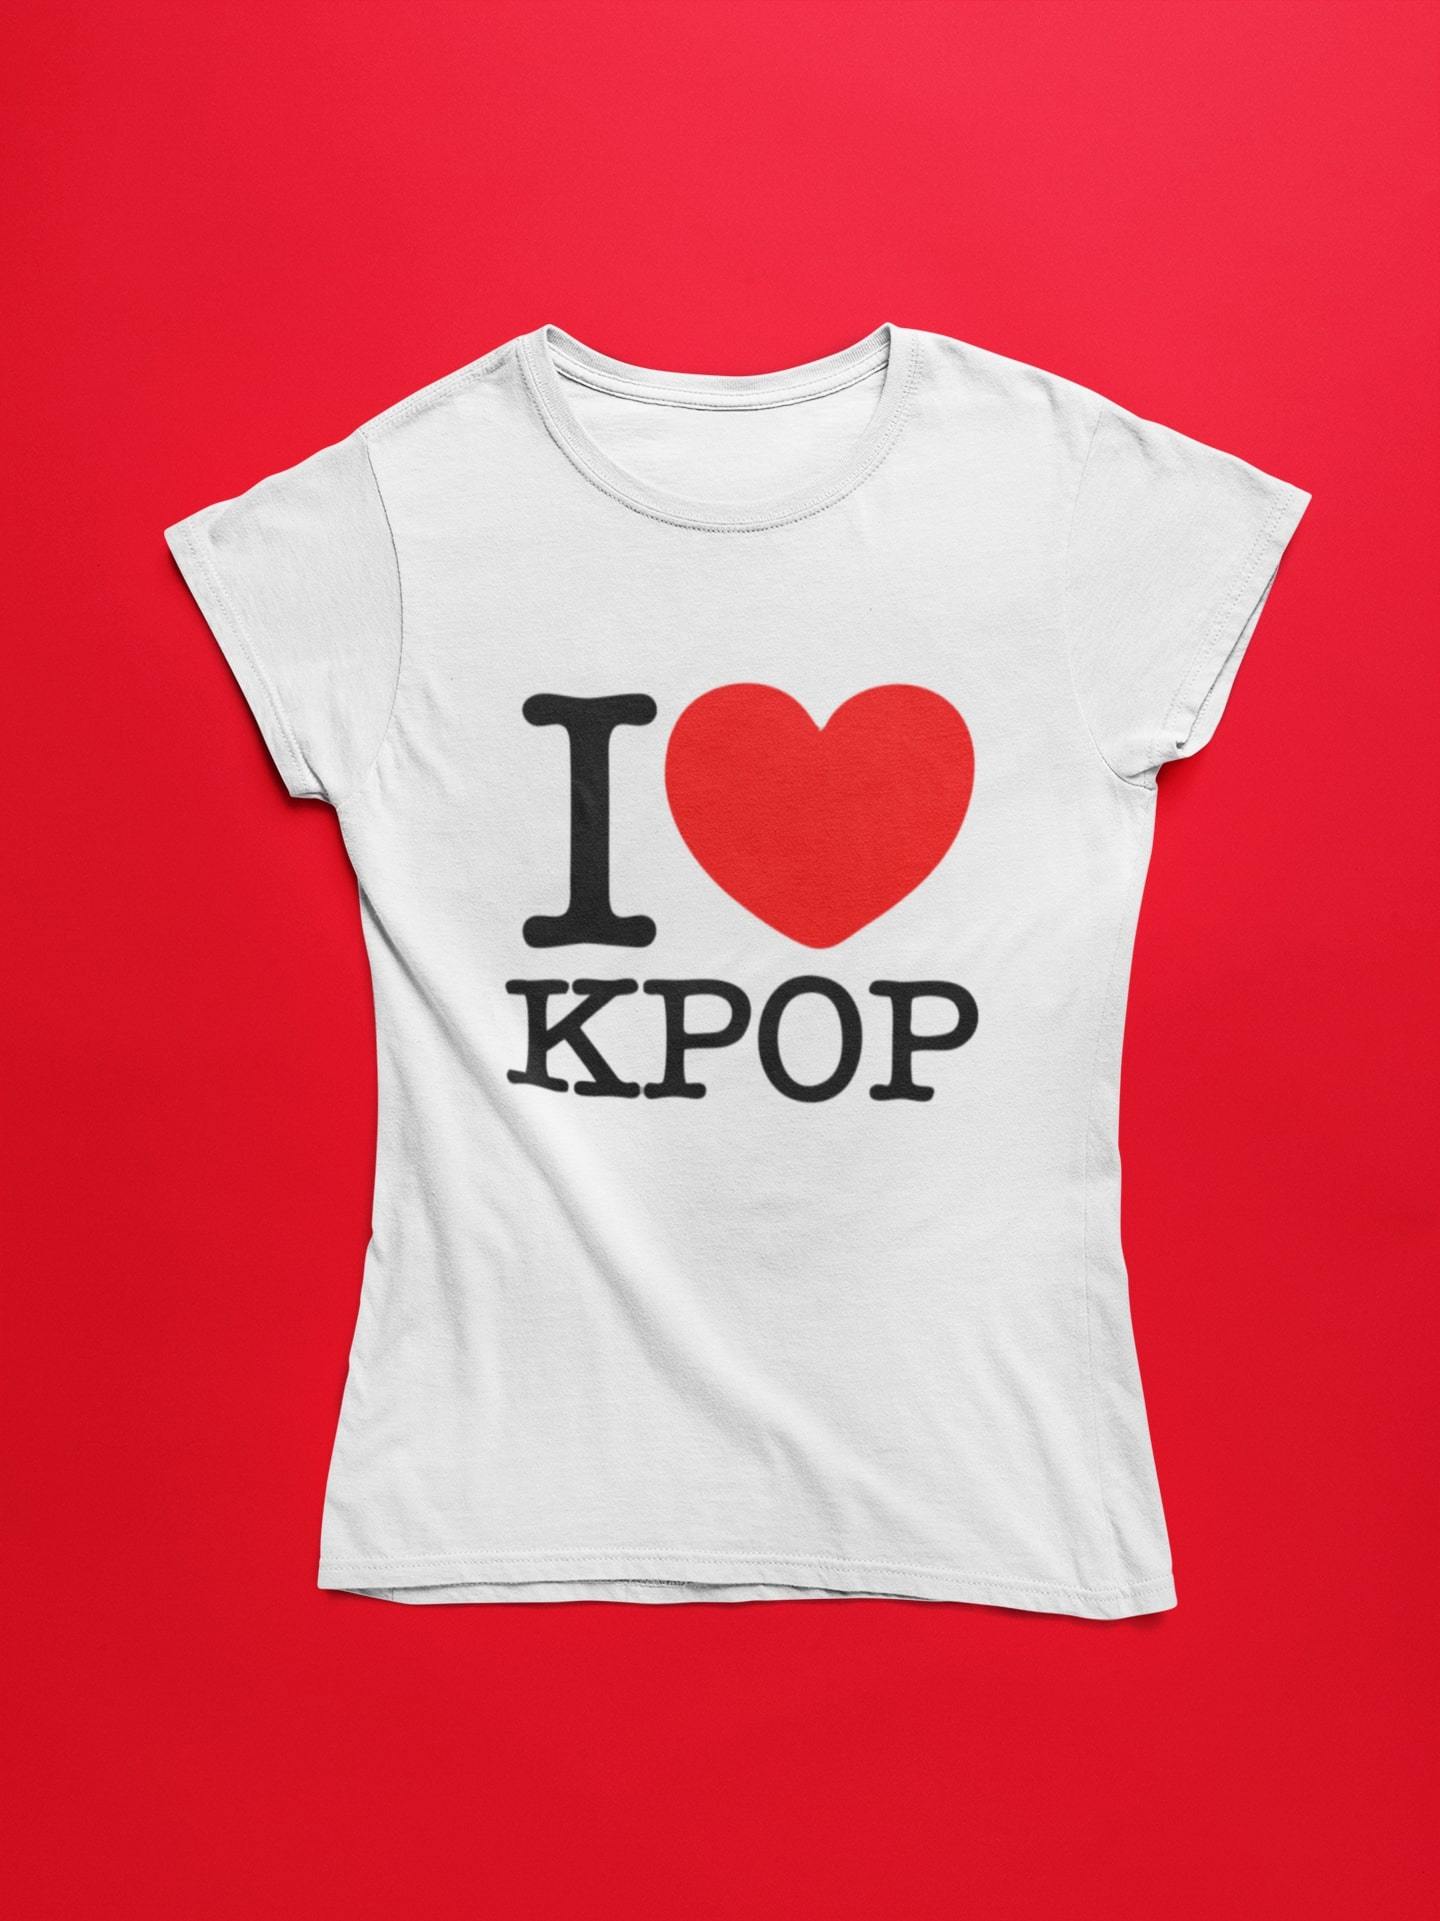 thelegalgang,I Love KPOP Inspired T-Shirt for Women,WOMEN.